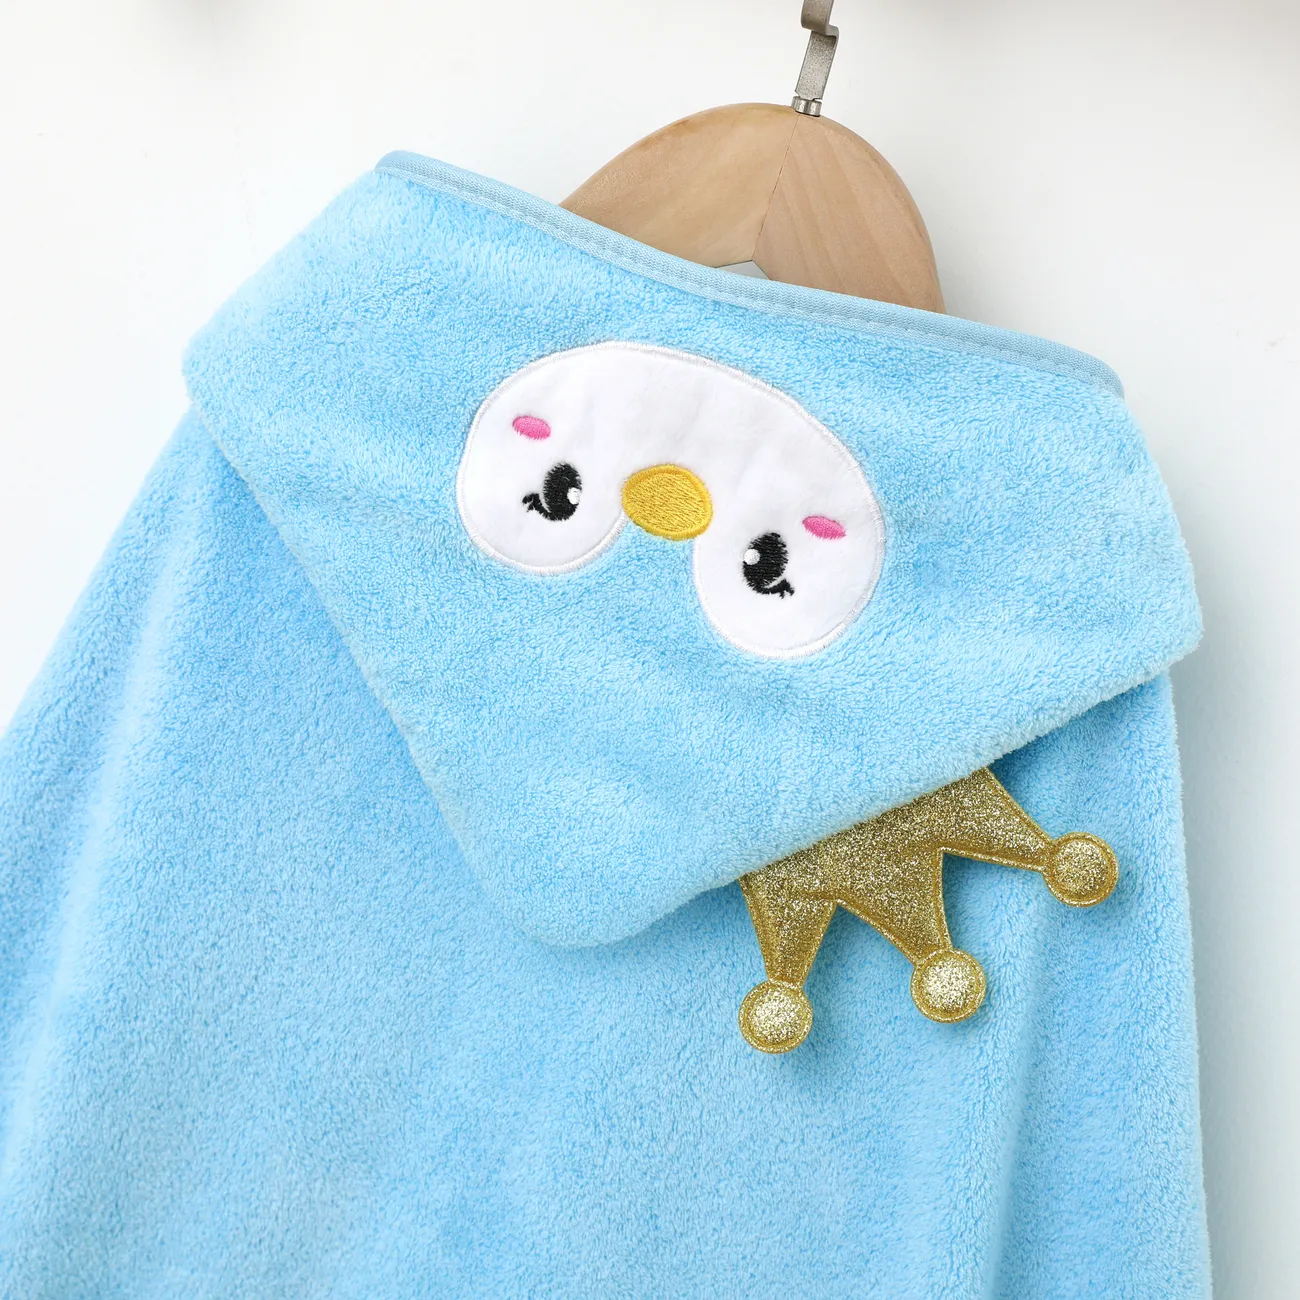 Bambino piccolo Unisex Con cappuccio Infantile Pinguino Costumi da bagno Blu big image 1